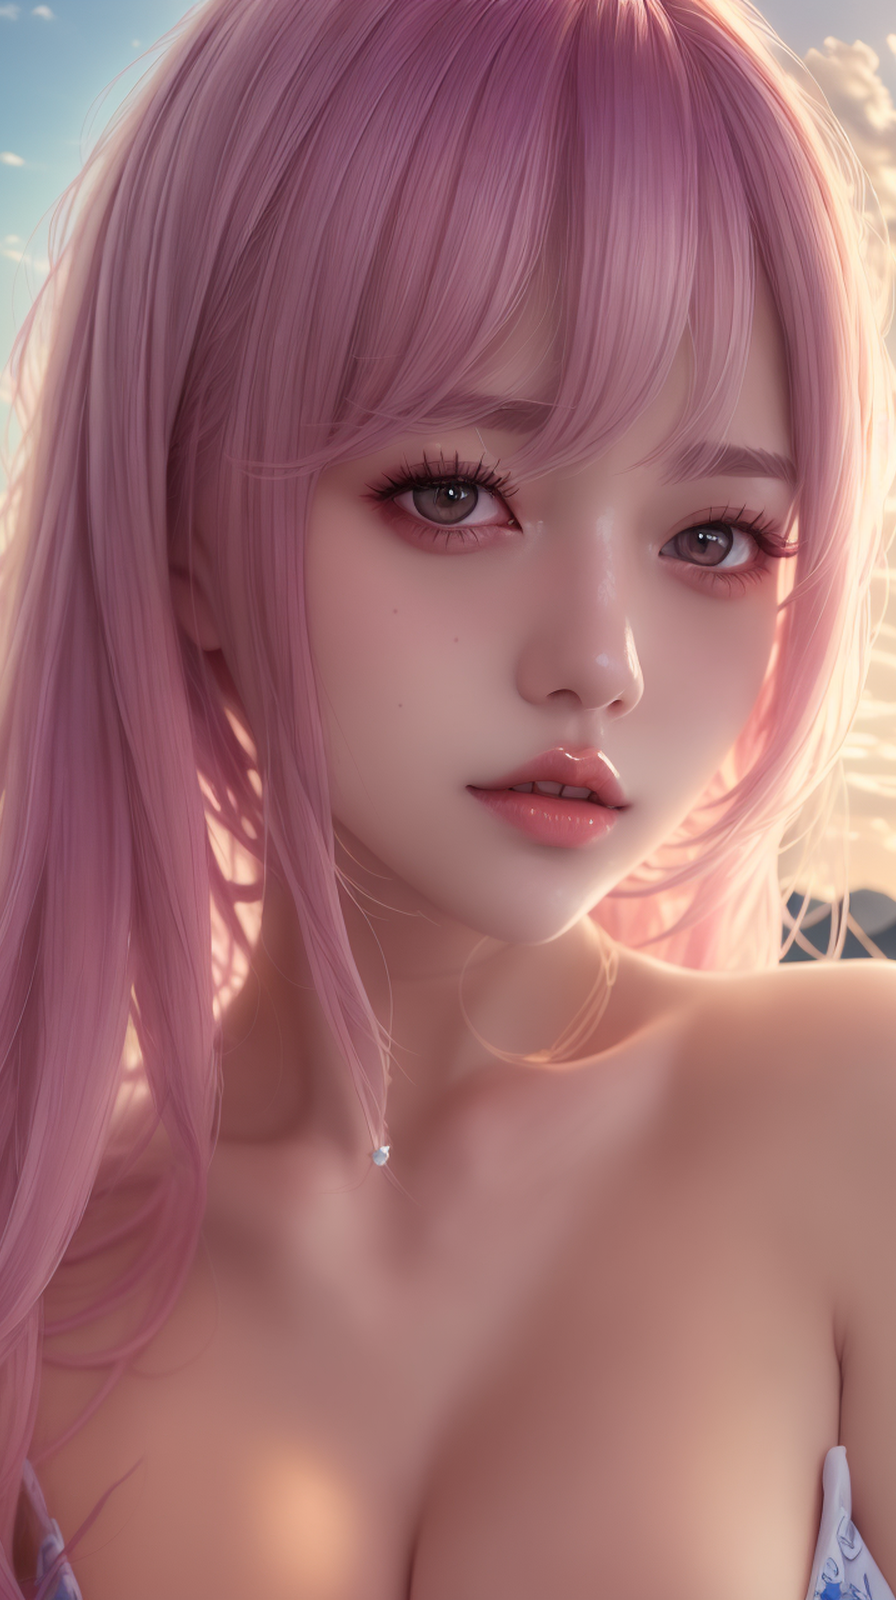 Ai Art Lips Women Pink Hair Vertical Looking At Viewer Asian 896x1600